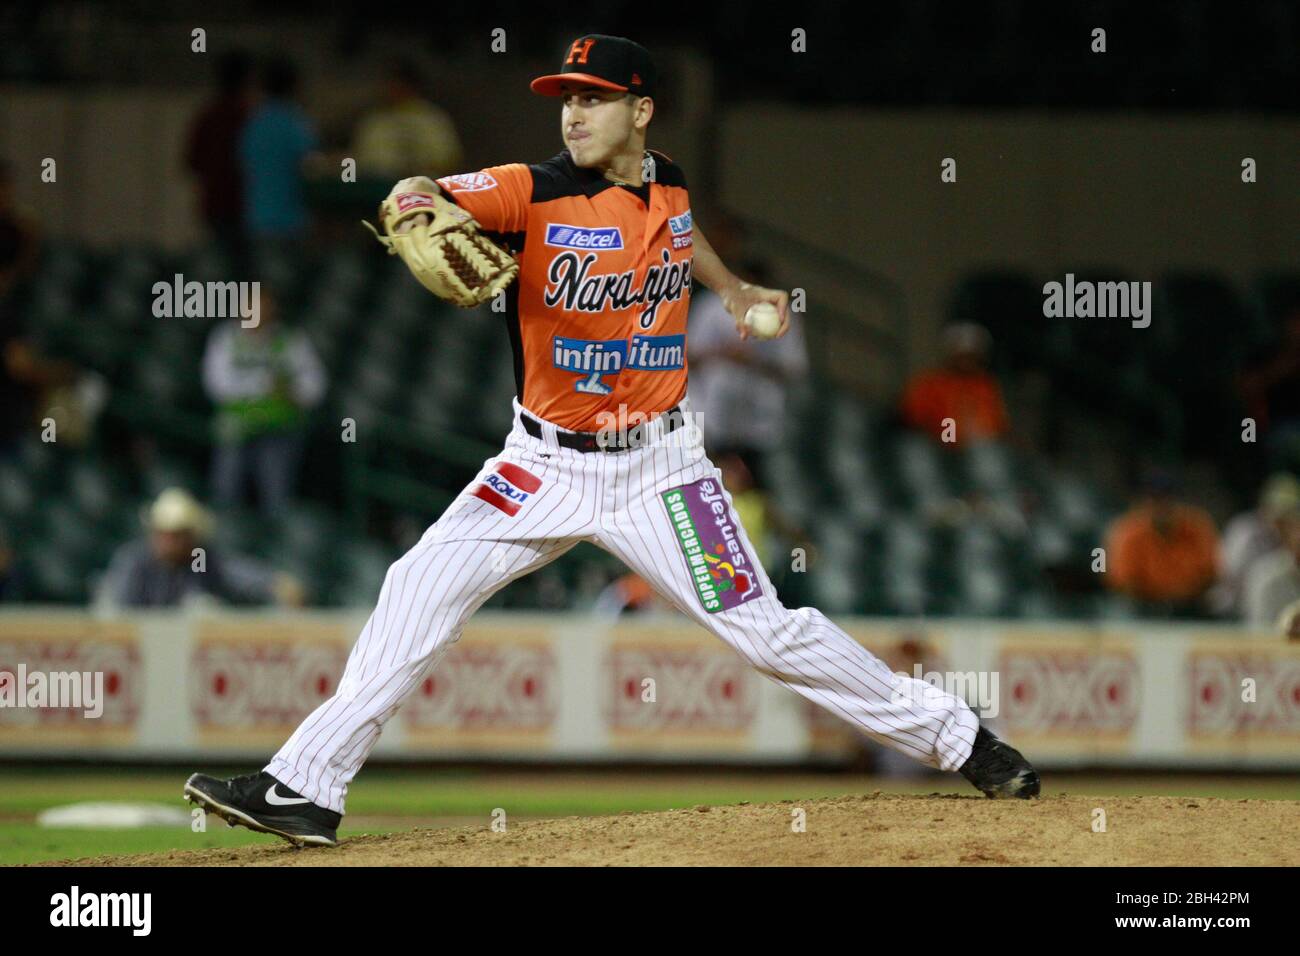 Ryan Verdugo, Pitcher de naranjeros, durante el juego de beisbol de Naranjeros vs Cañeros durante la primera Serie de la Liga Mexicana del Pacifico. Stockfoto